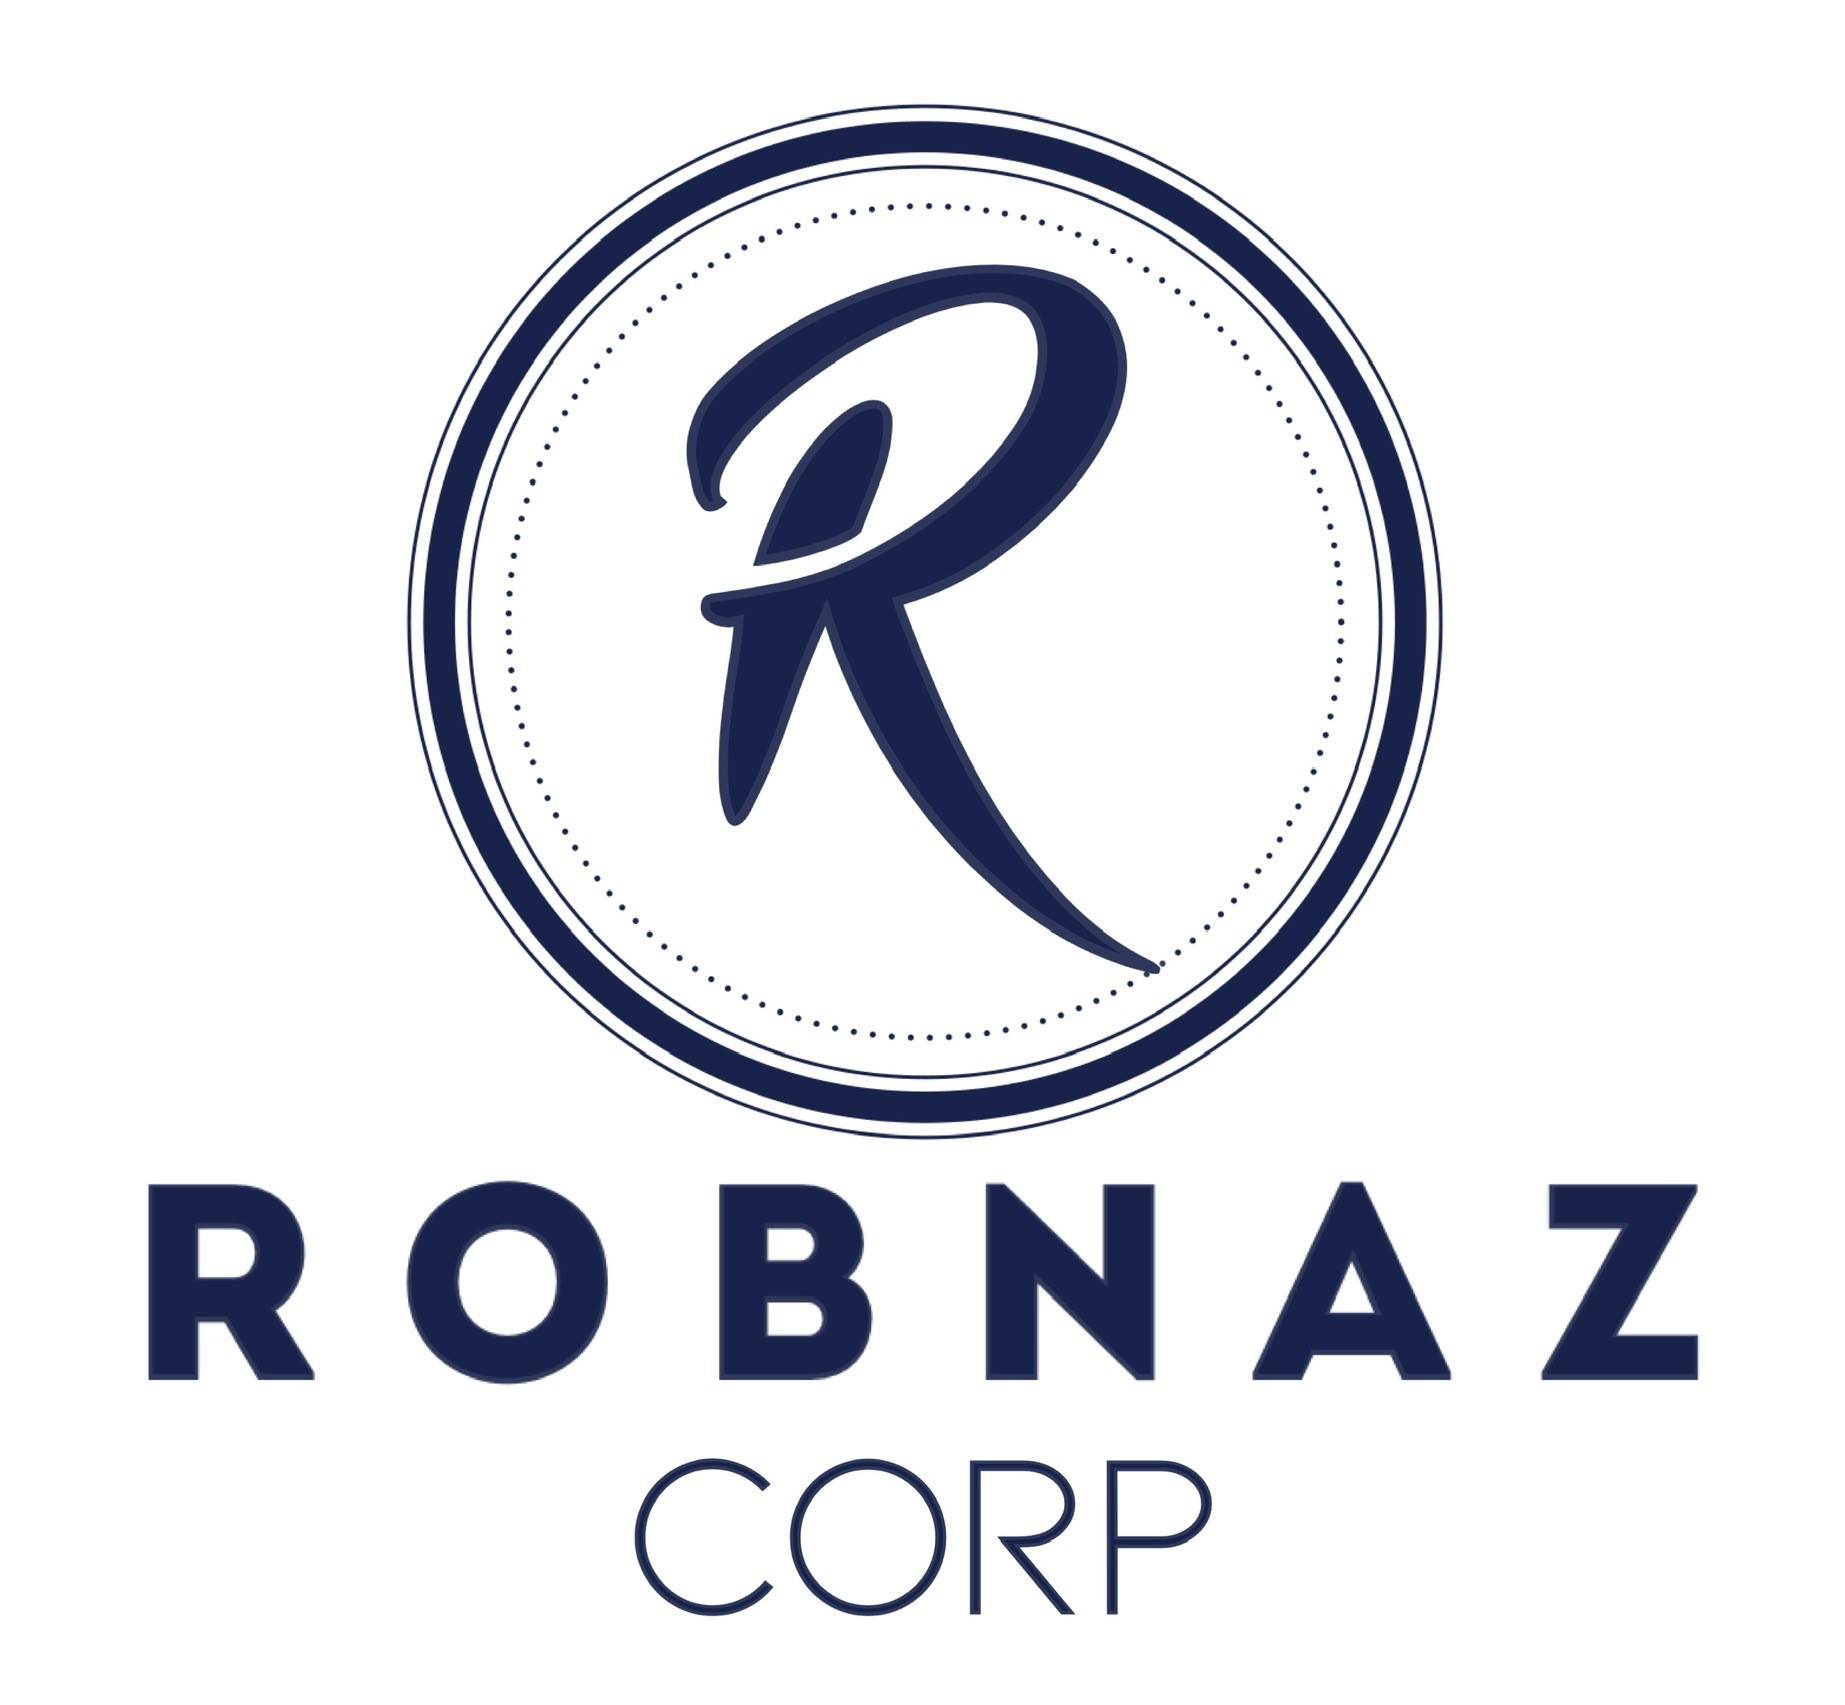 Robnaz Corp